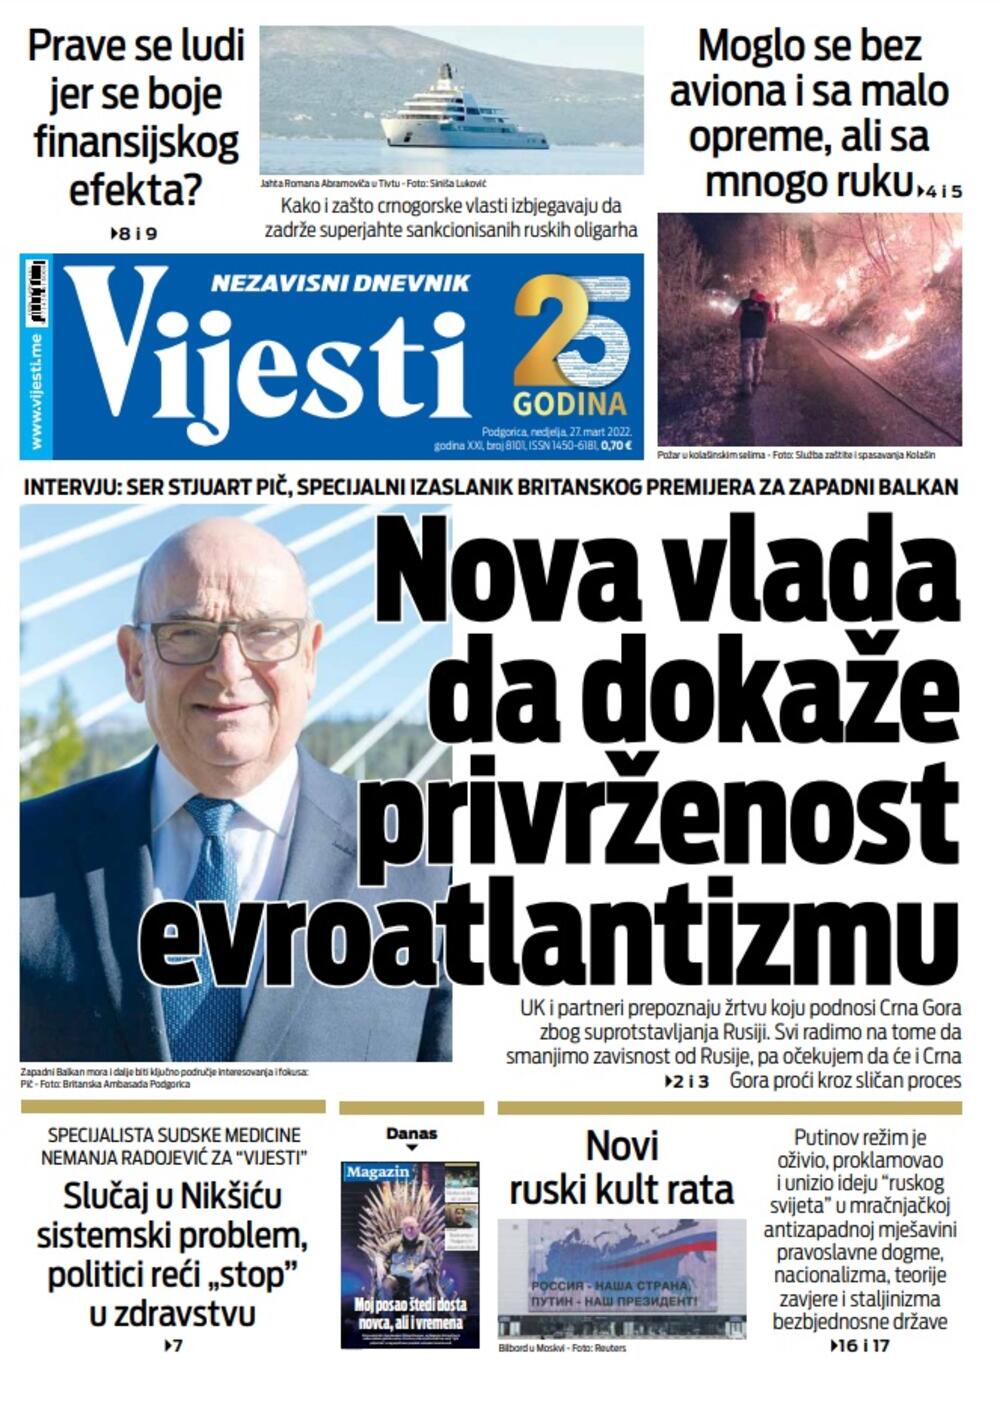 Naslovna strana "Vijesti" za 27. mart 2022., Foto: Vijesti